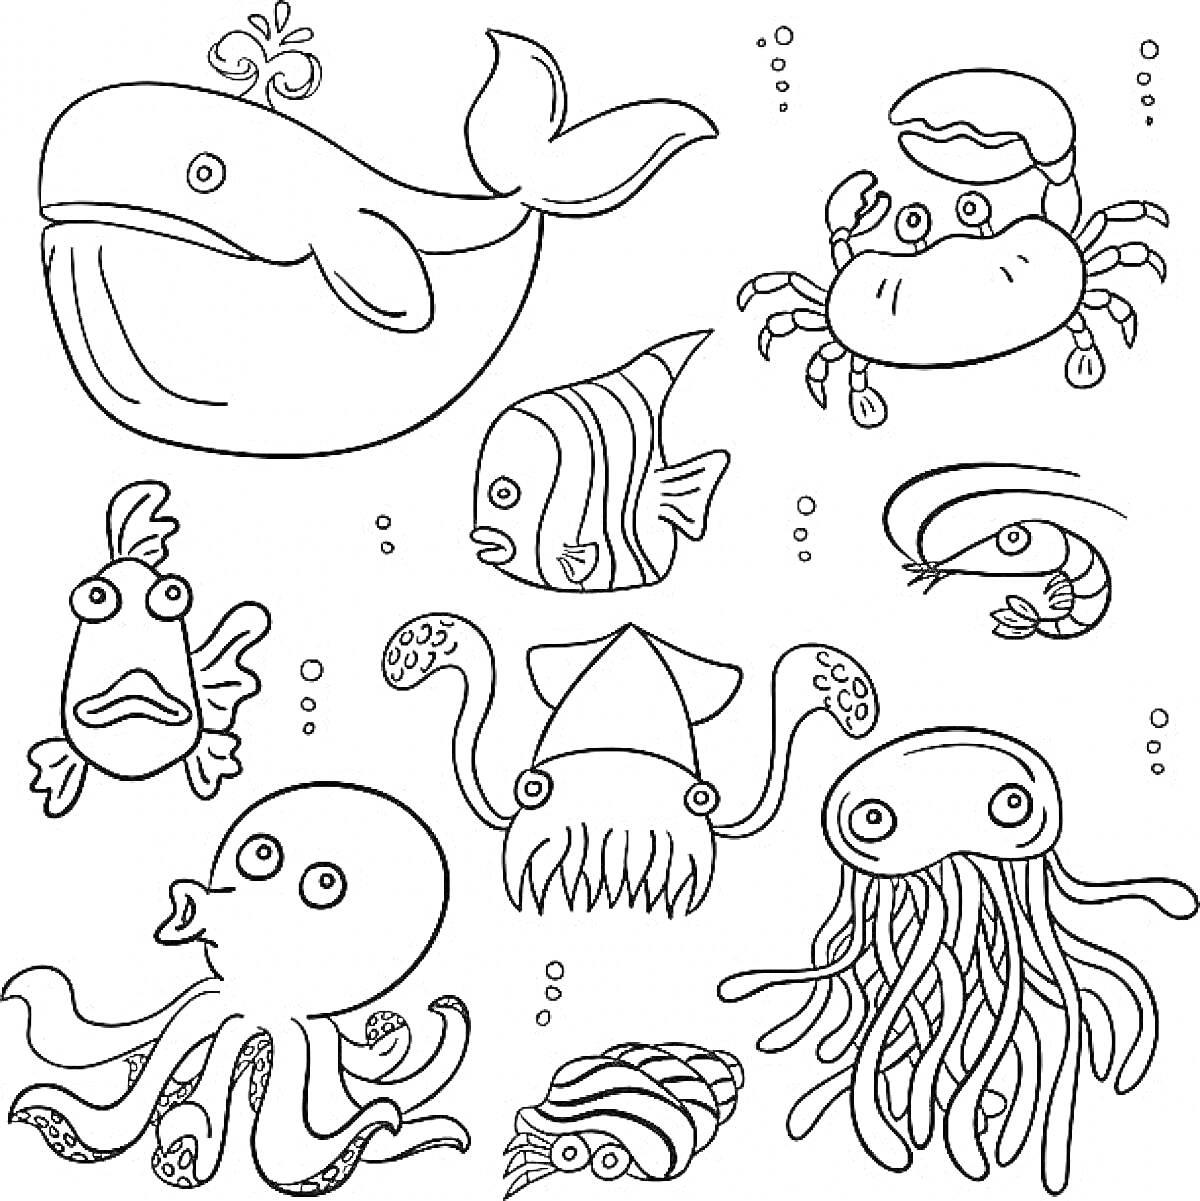 Раскраска Кит, краб, рыба, осьминог, кальмар, медуза, креветка, улитка, экзотическая рыба